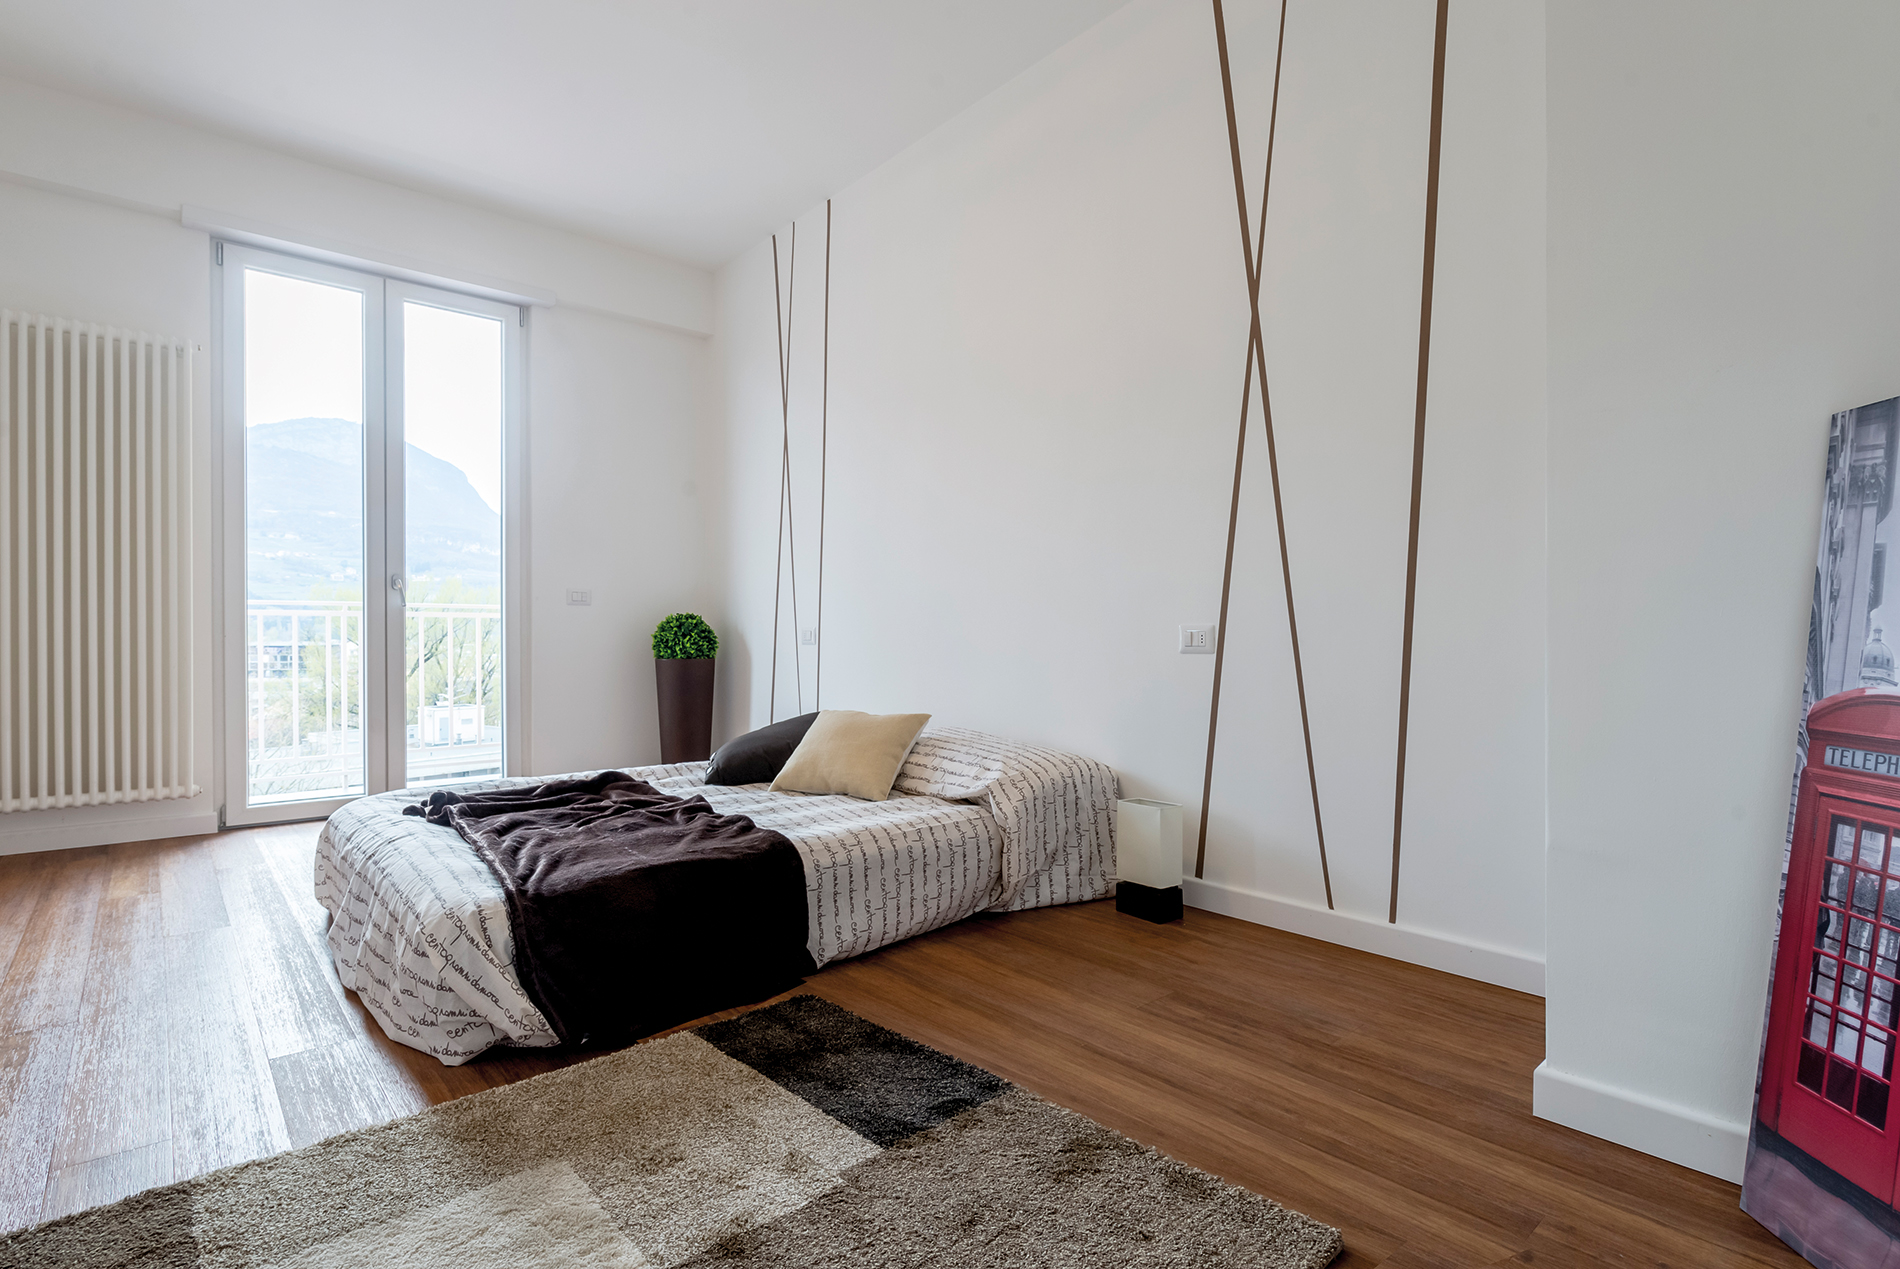 Pavimento bamboo bood Elegance Exotic interno camera da letto casa